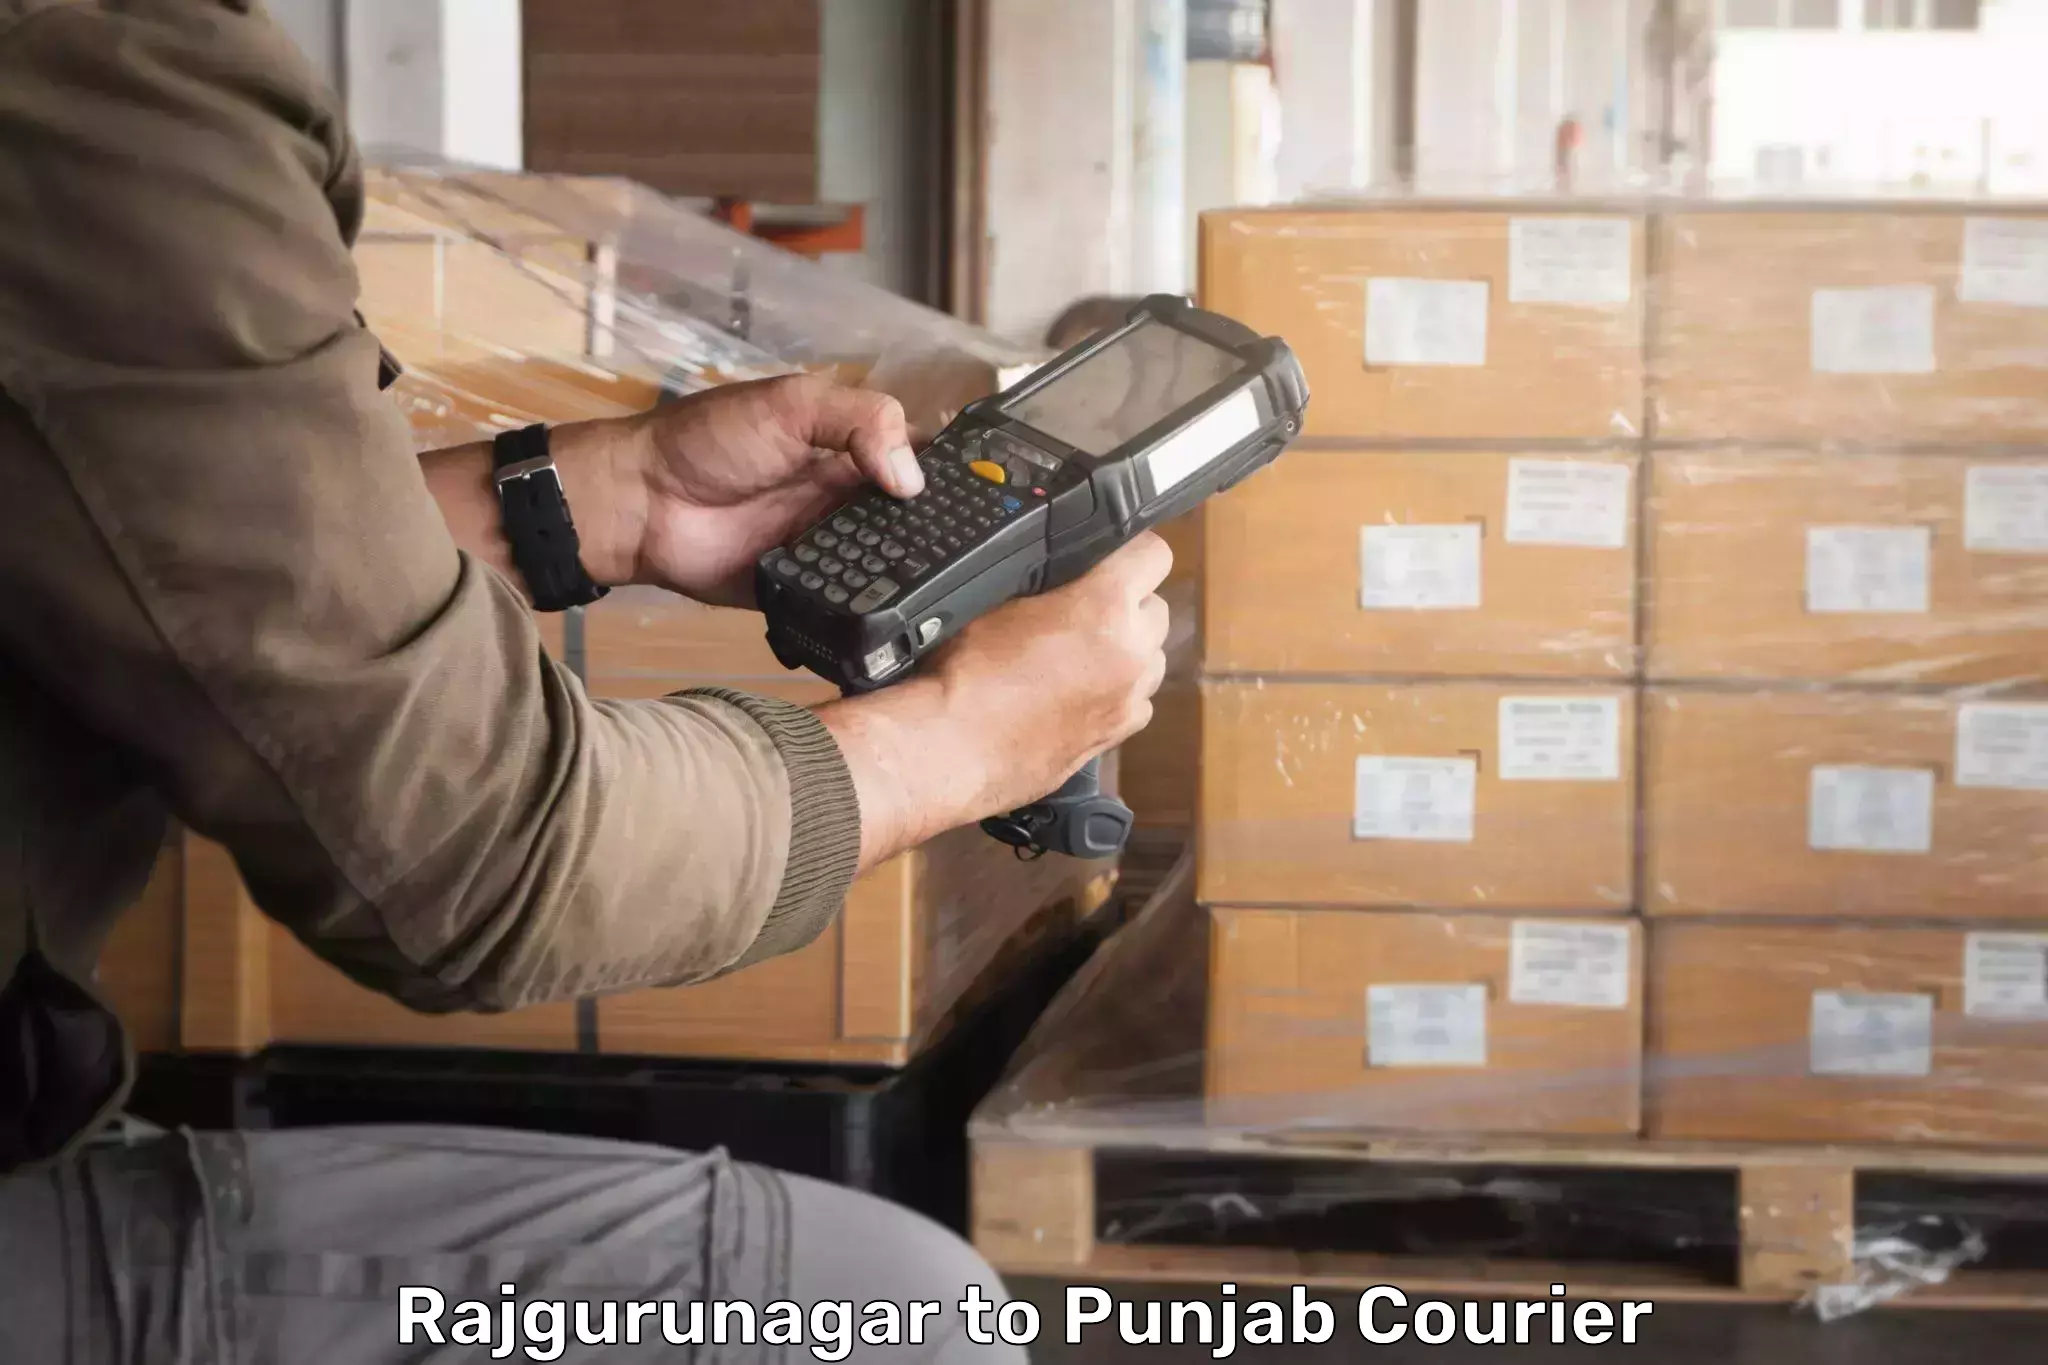 Bulk shipment Rajgurunagar to IIT Ropar